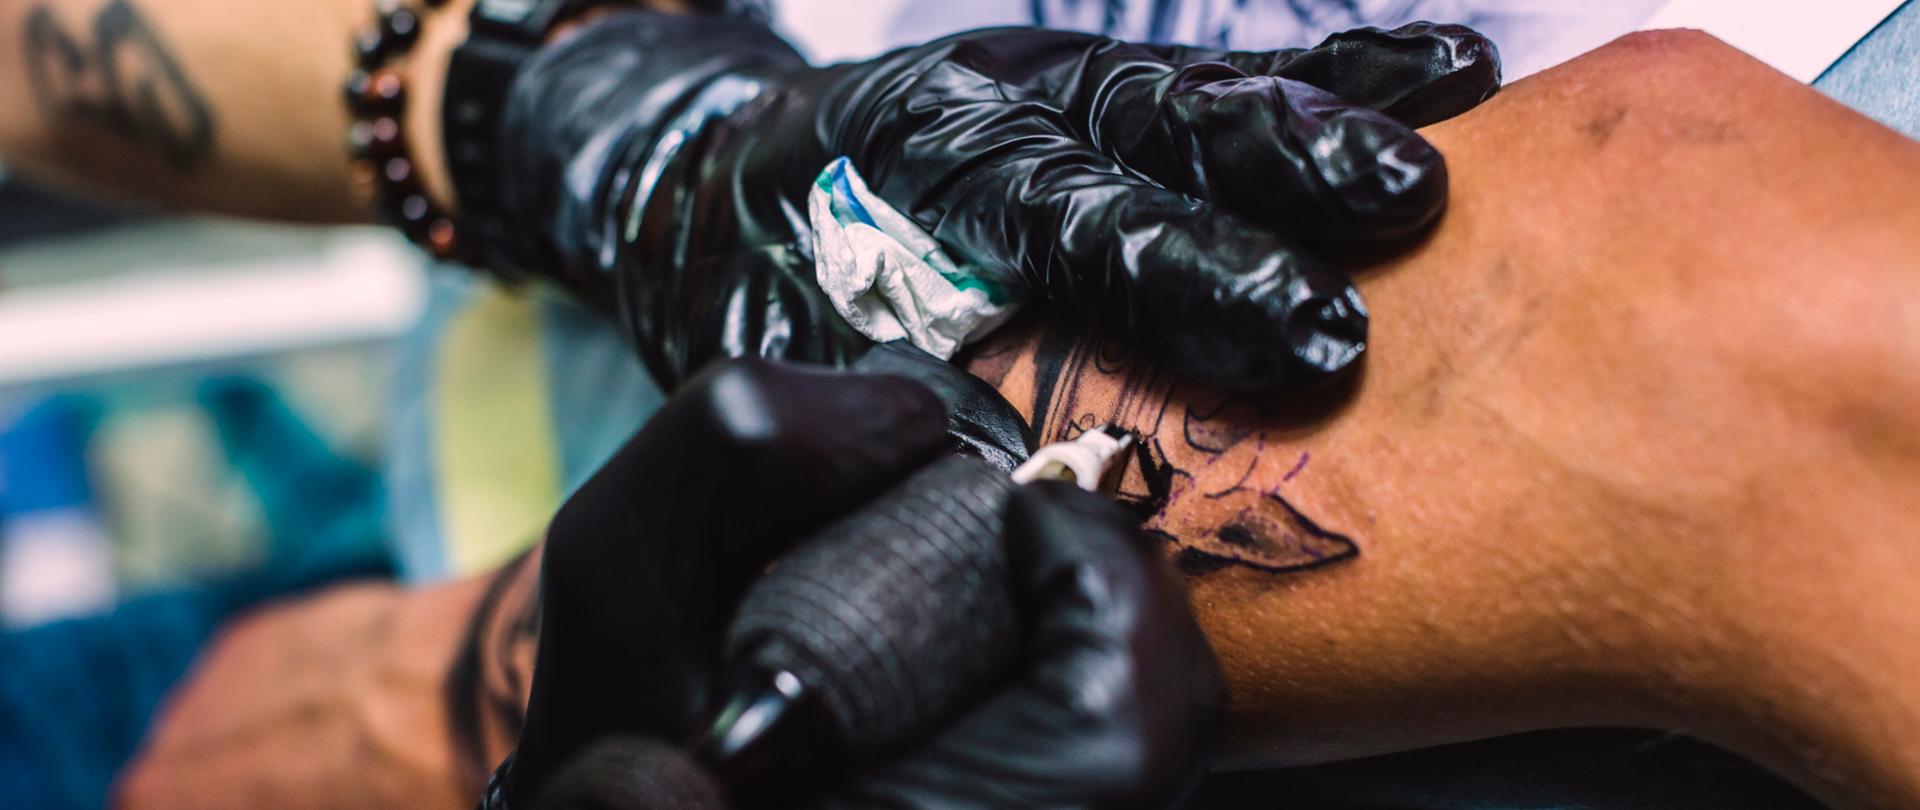 Tatuowana ręka przez tatuażystę